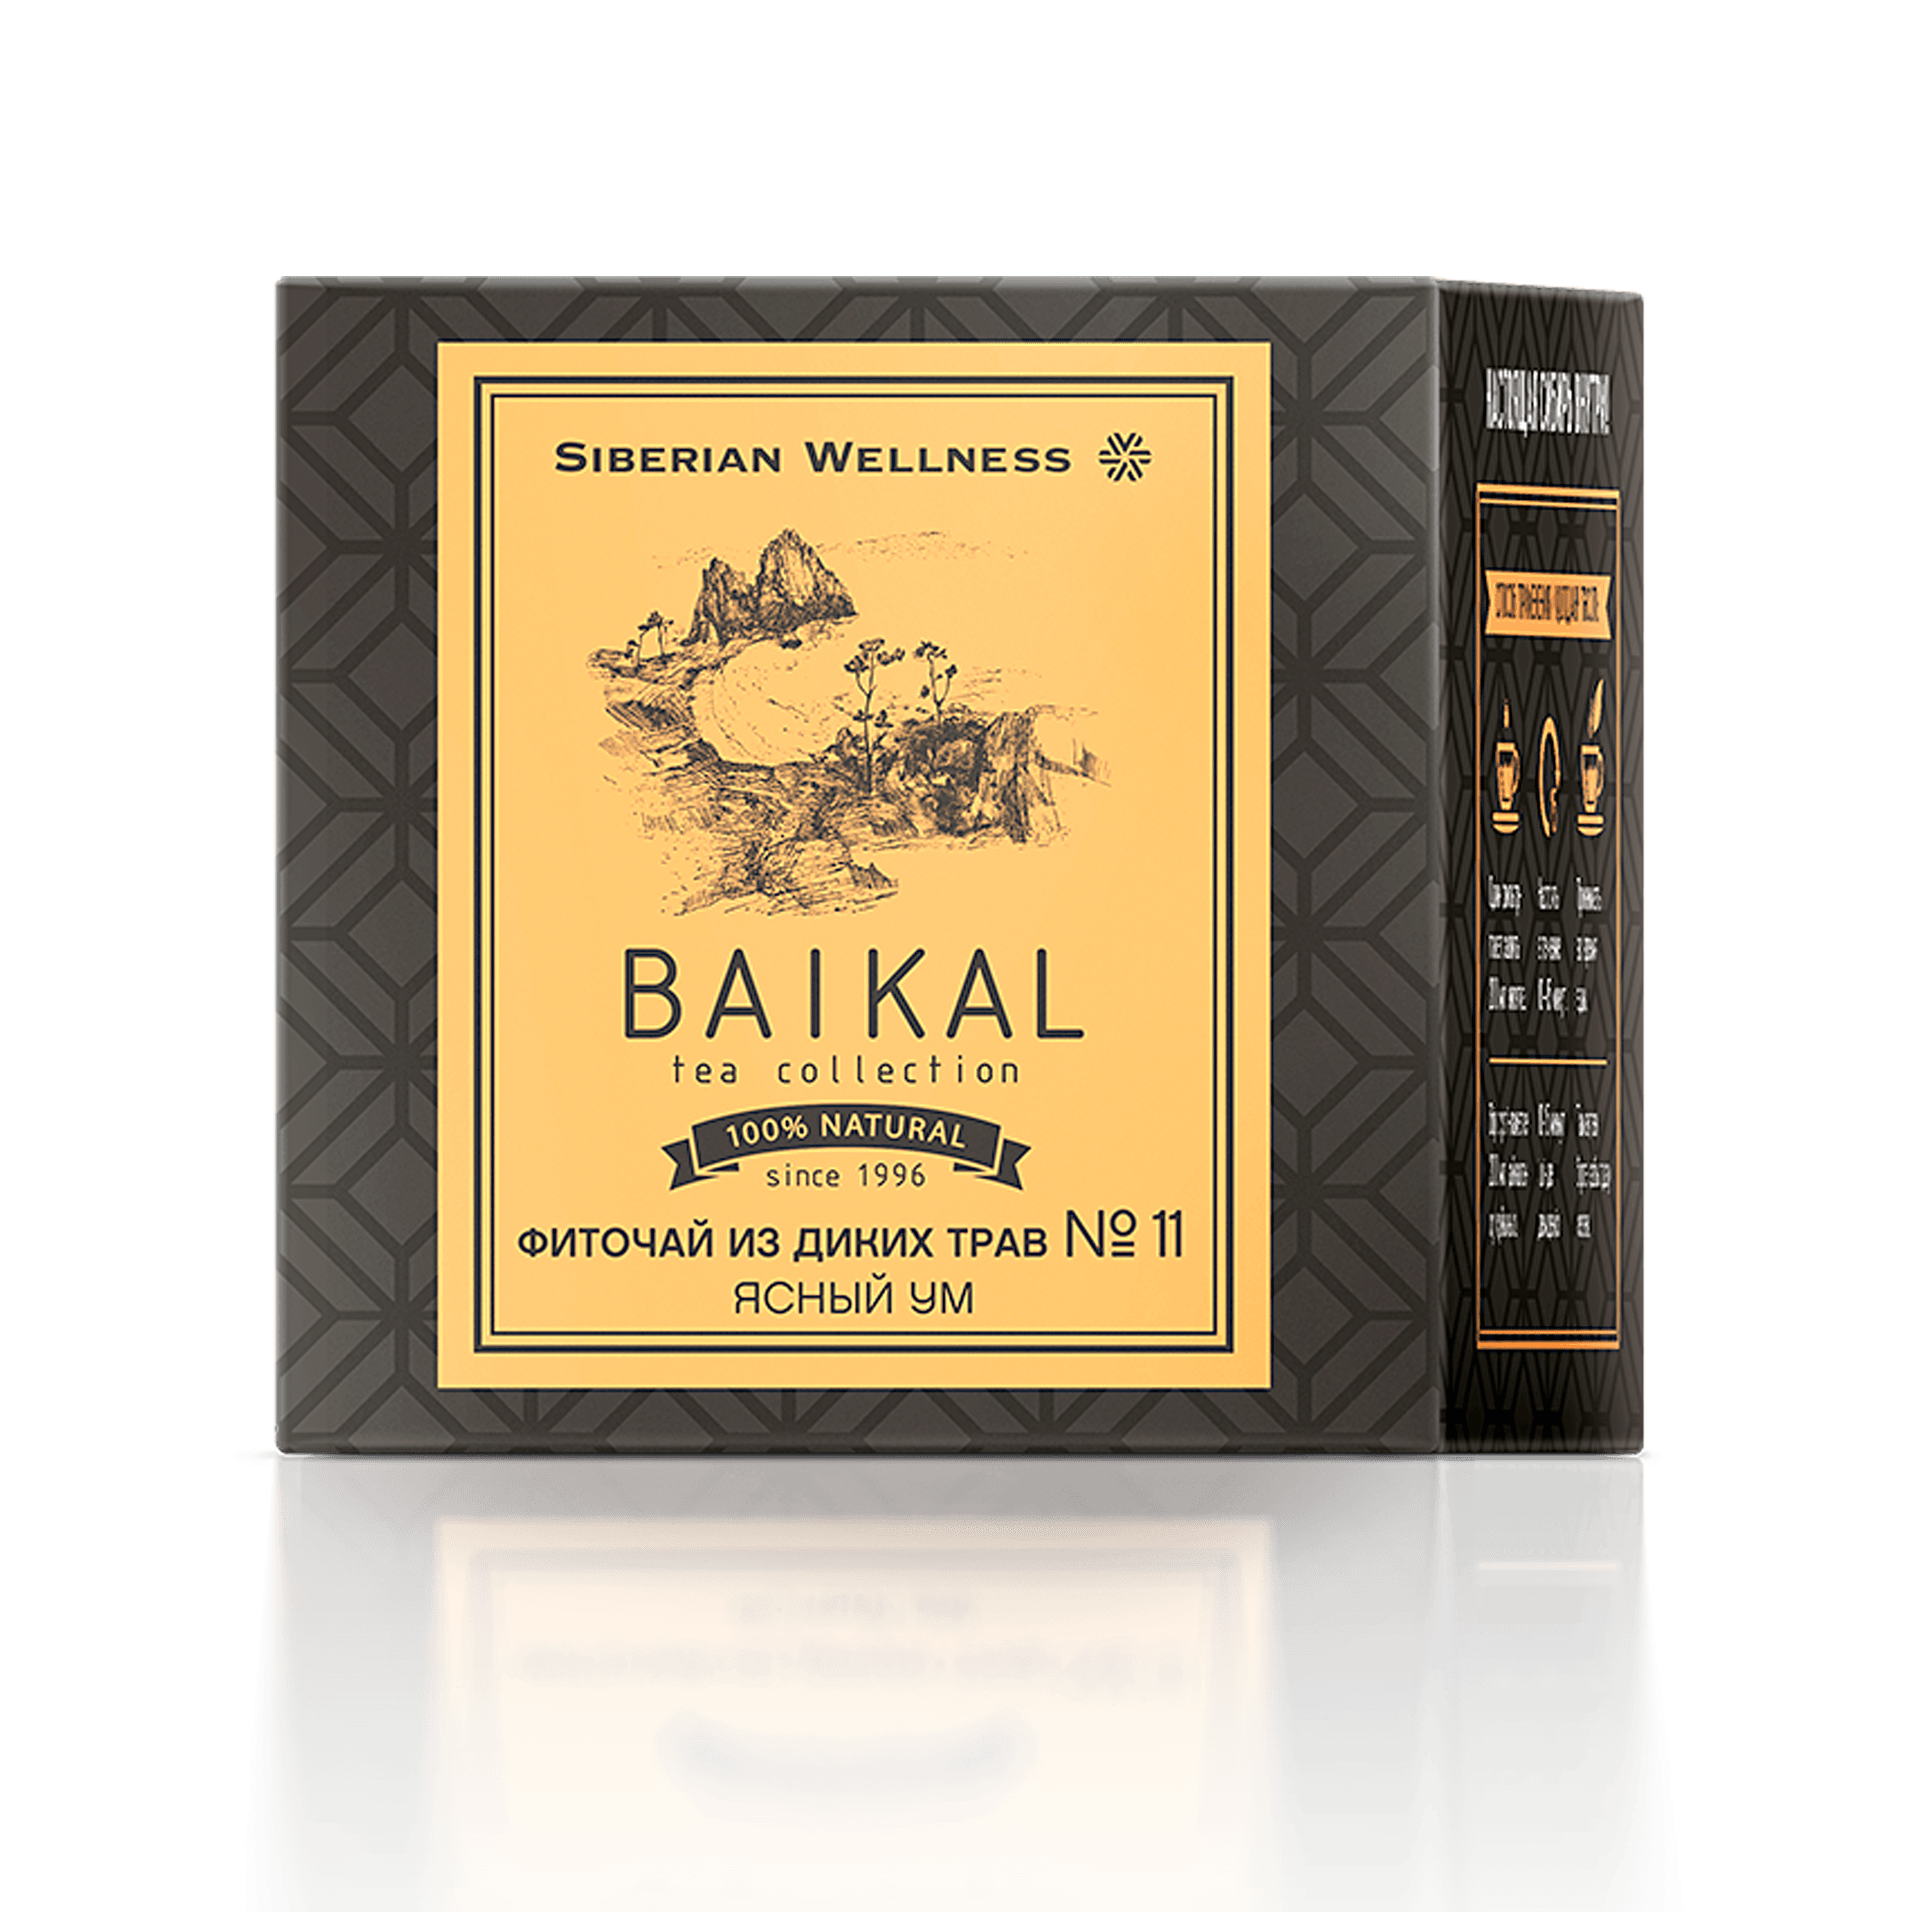 Baikal Tea Collection - Фиточай из диких трав № 11 (Ясный ум)